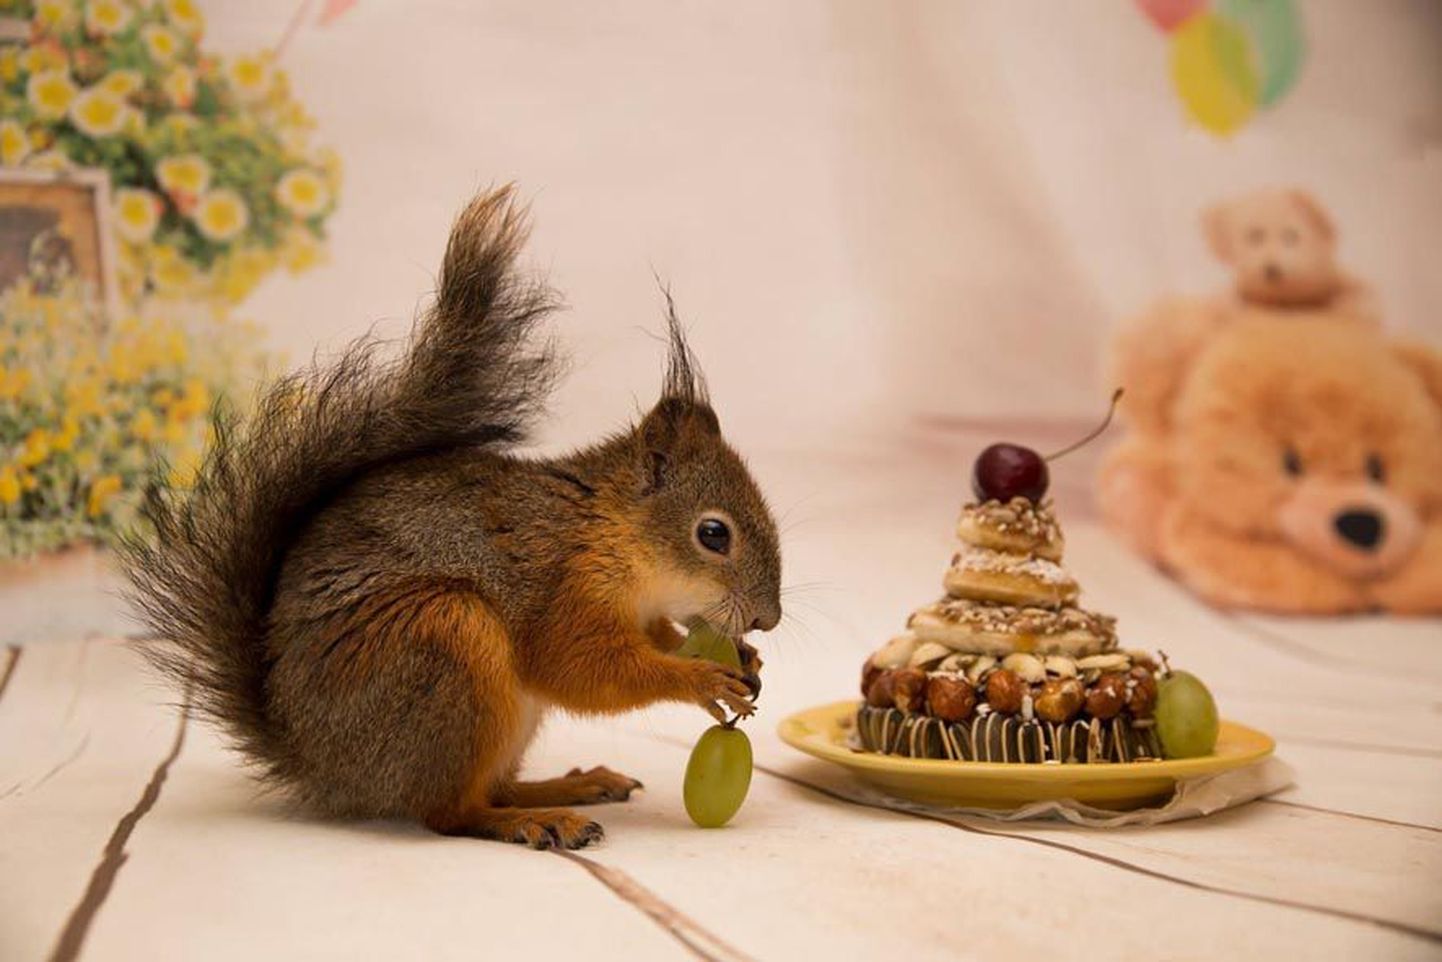 Oravapoiss Kribu saab oma sünnipäevatordilt põske pista erinevaid seemneid, pähkleid, puuviljatükke ja viinamarju. Nagu ikka, ei puudu ka kirss tordilt.